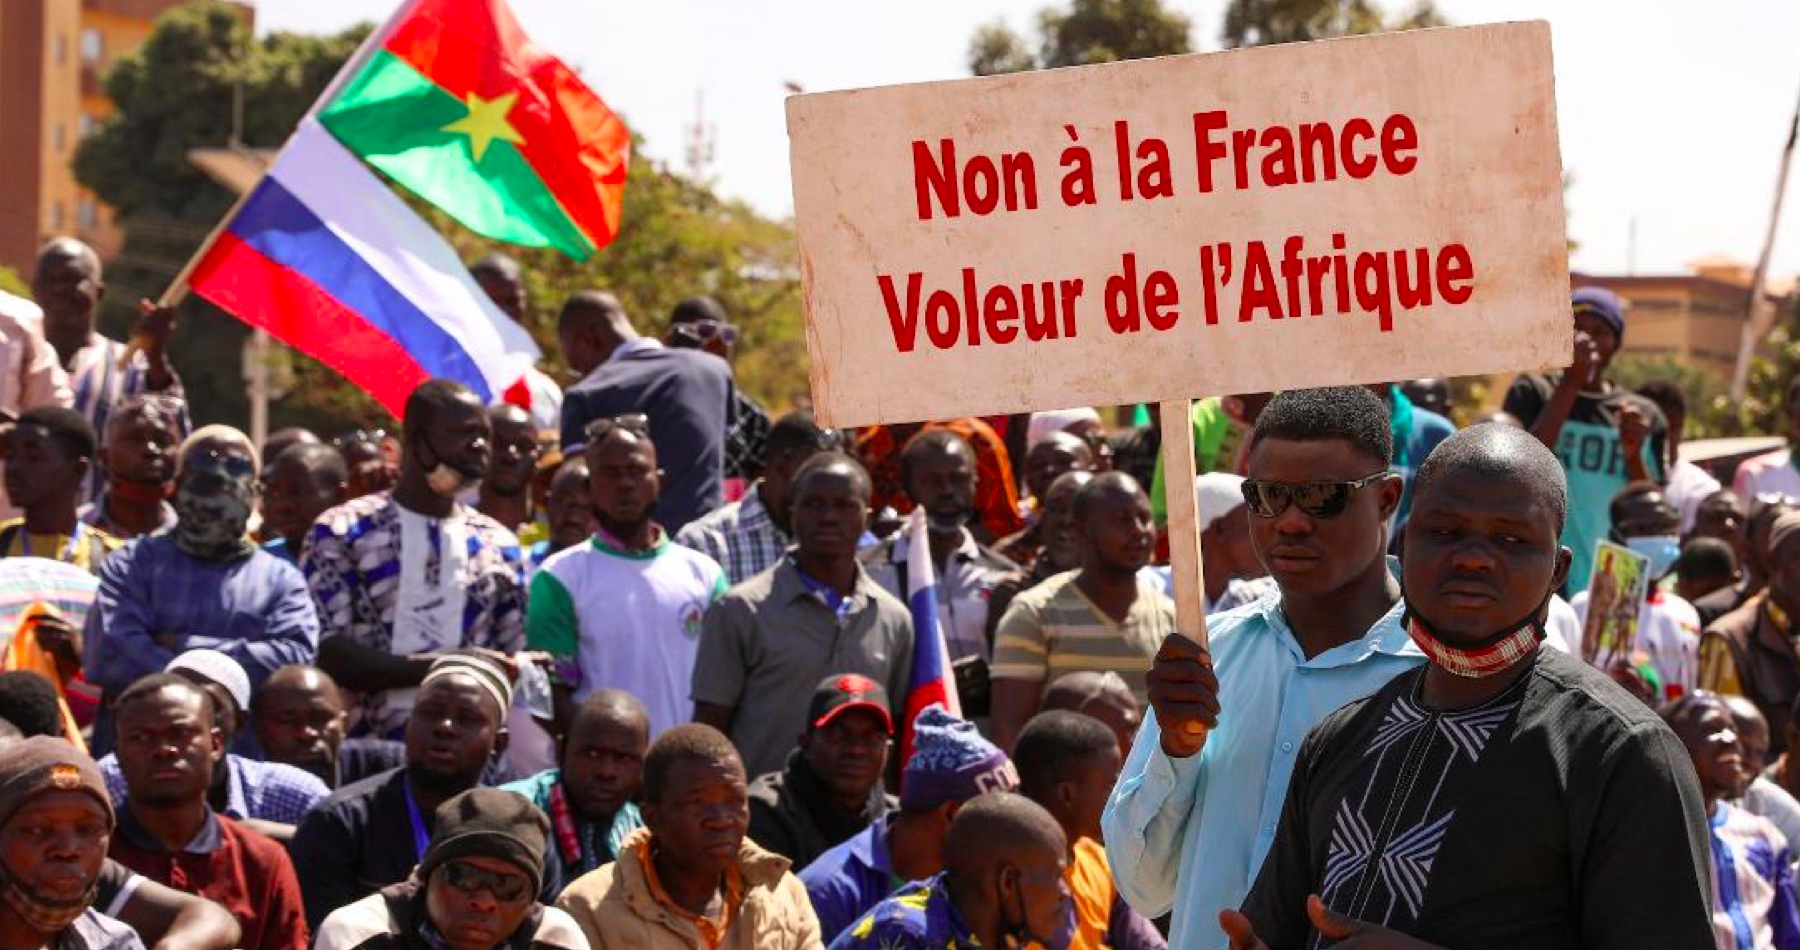 Burkina Faso vyhostila francouzského vojenského atašé a ukončila vojenskou spolupráci s Francií